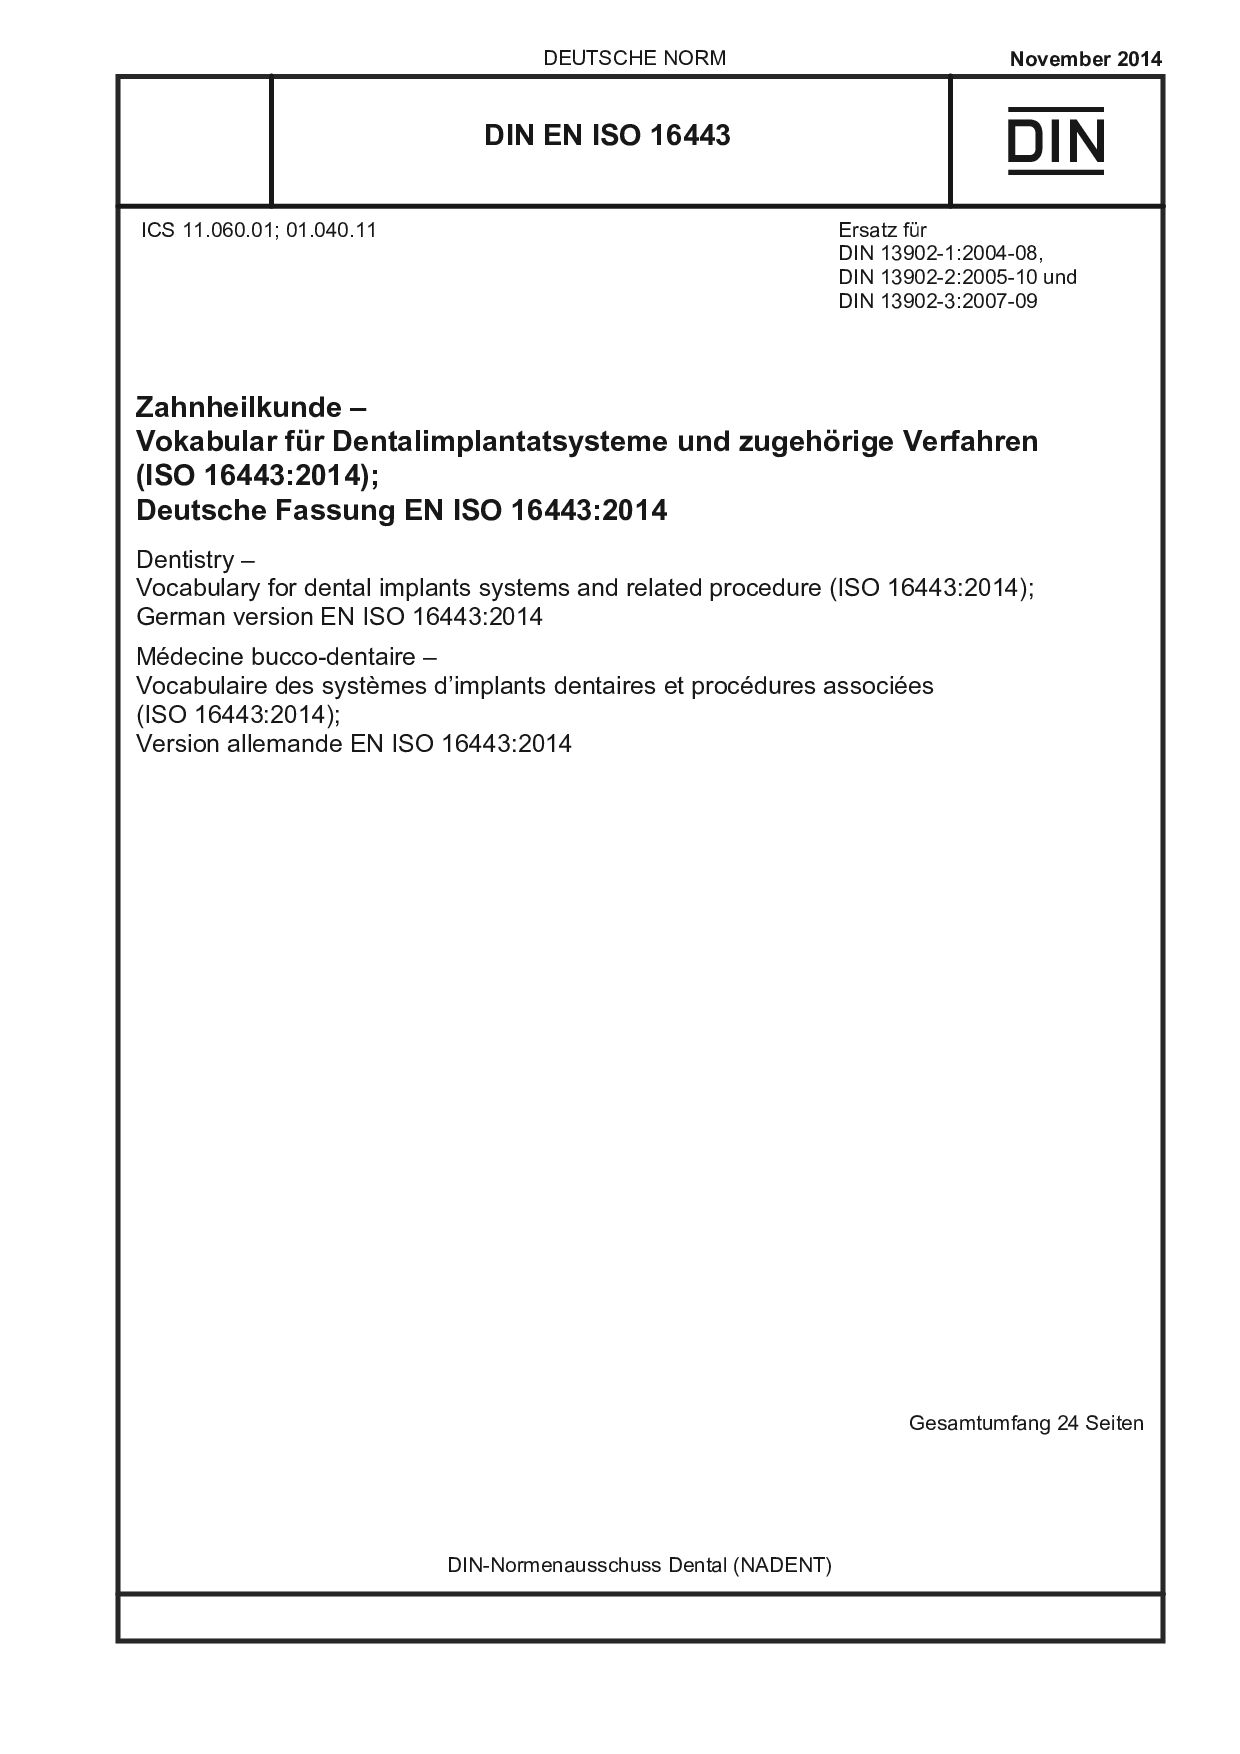 DIN EN ISO 16443:2014